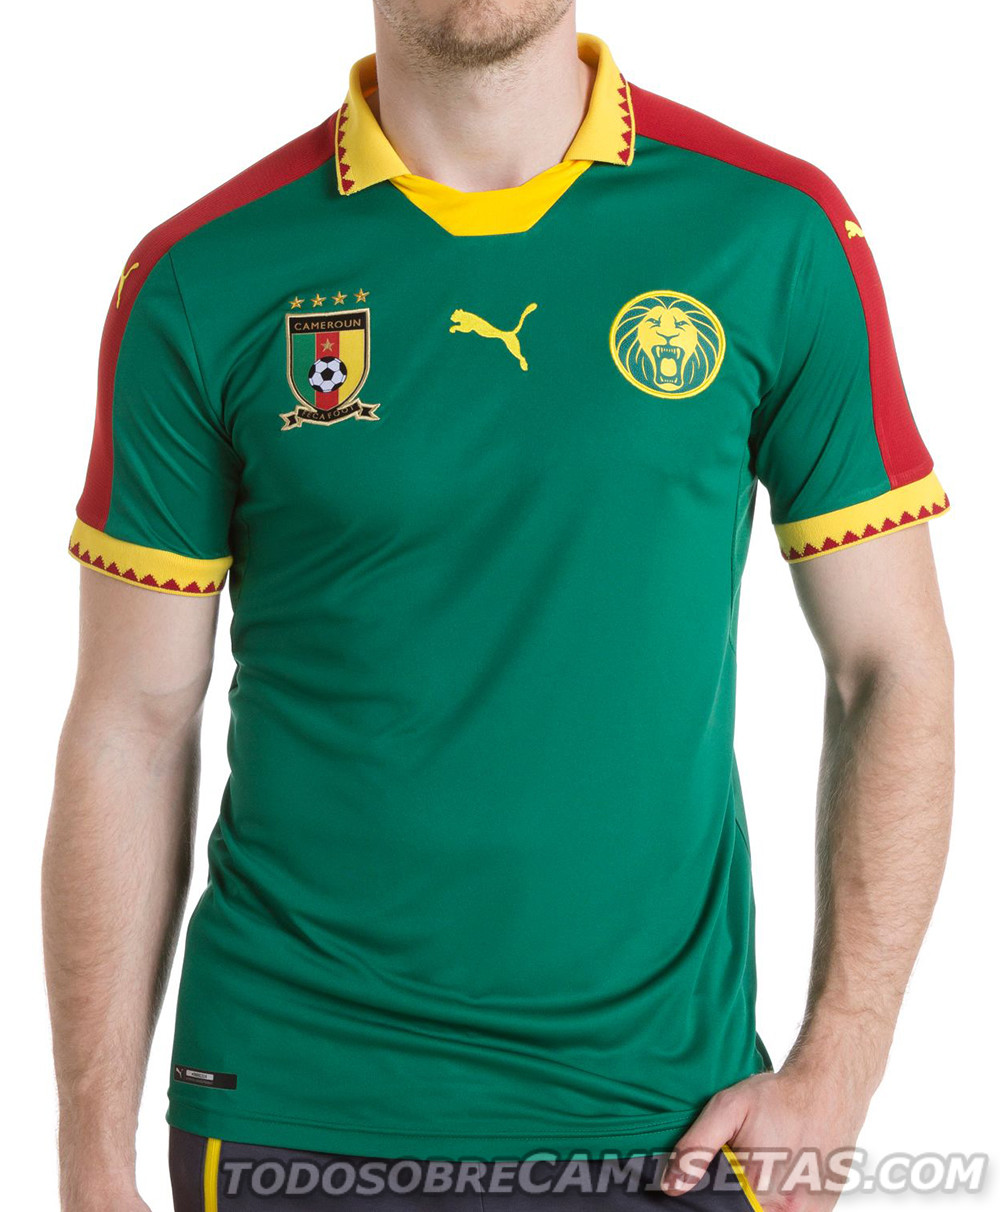 Cameroon, Ivory Coast and Ghana Puma 2016-17 kits